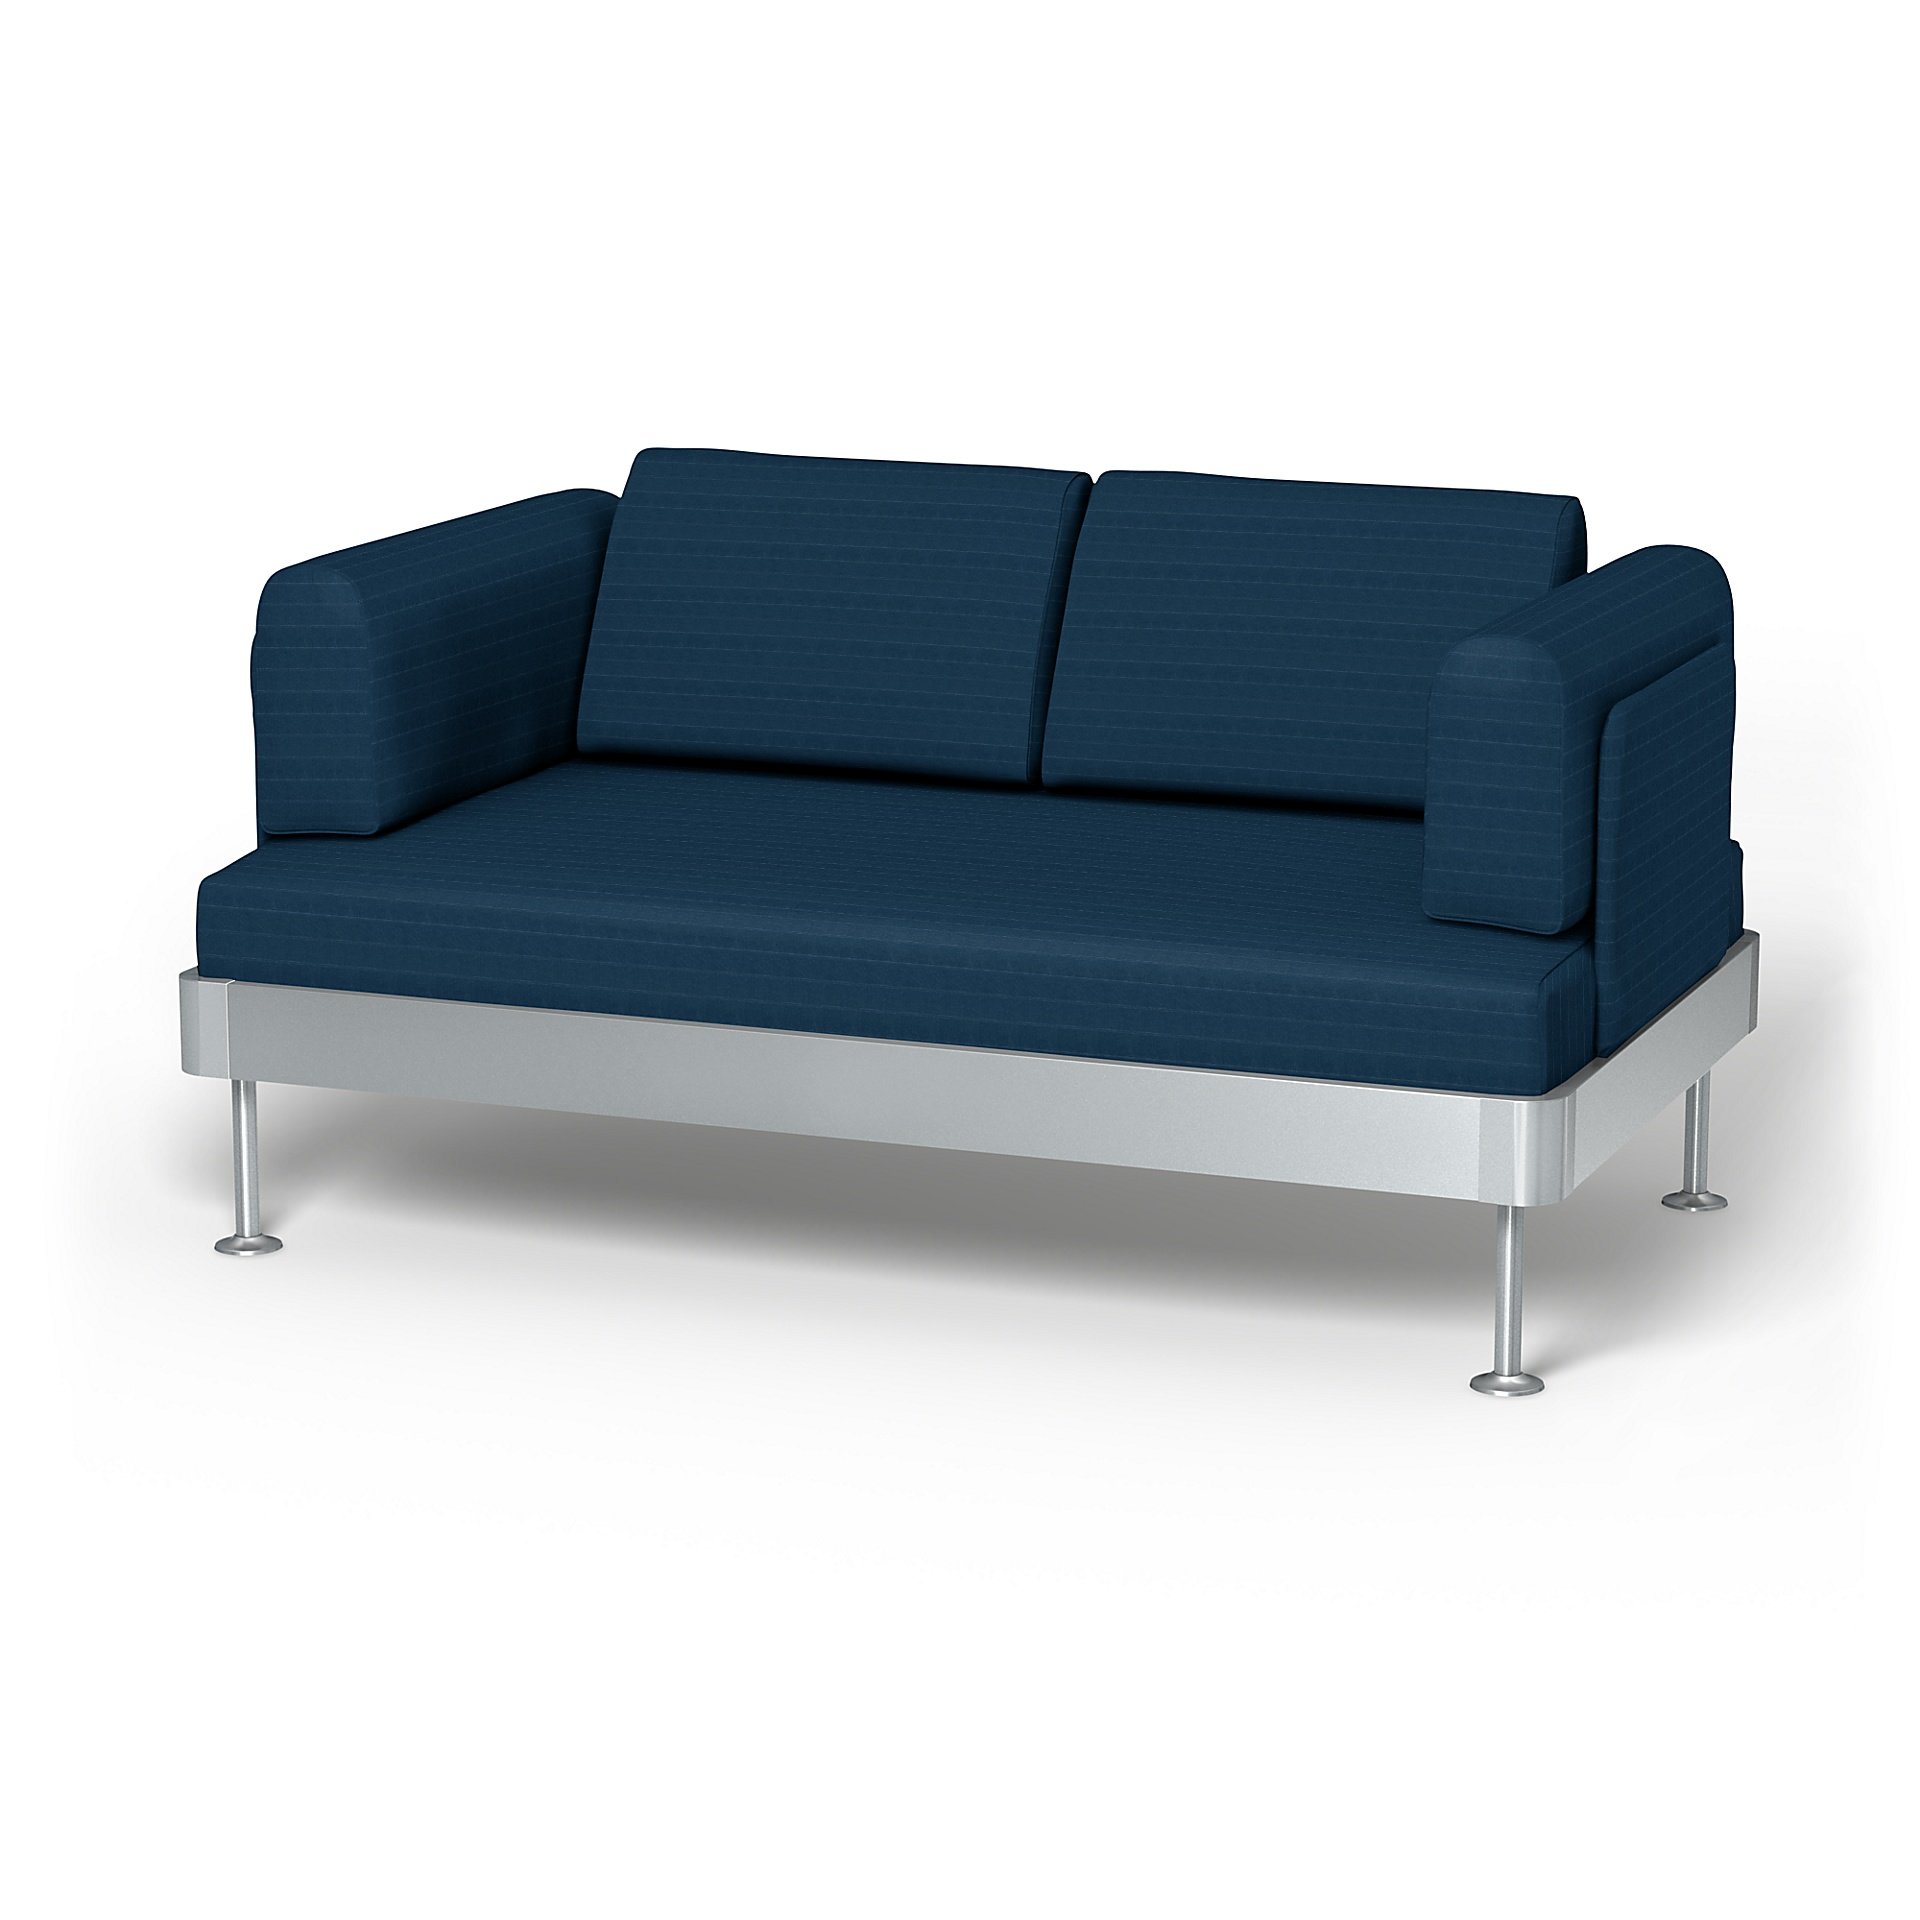 IKEA - Delaktig 2 Seater Sofa Cover, Denim Blue, Velvet - Bemz